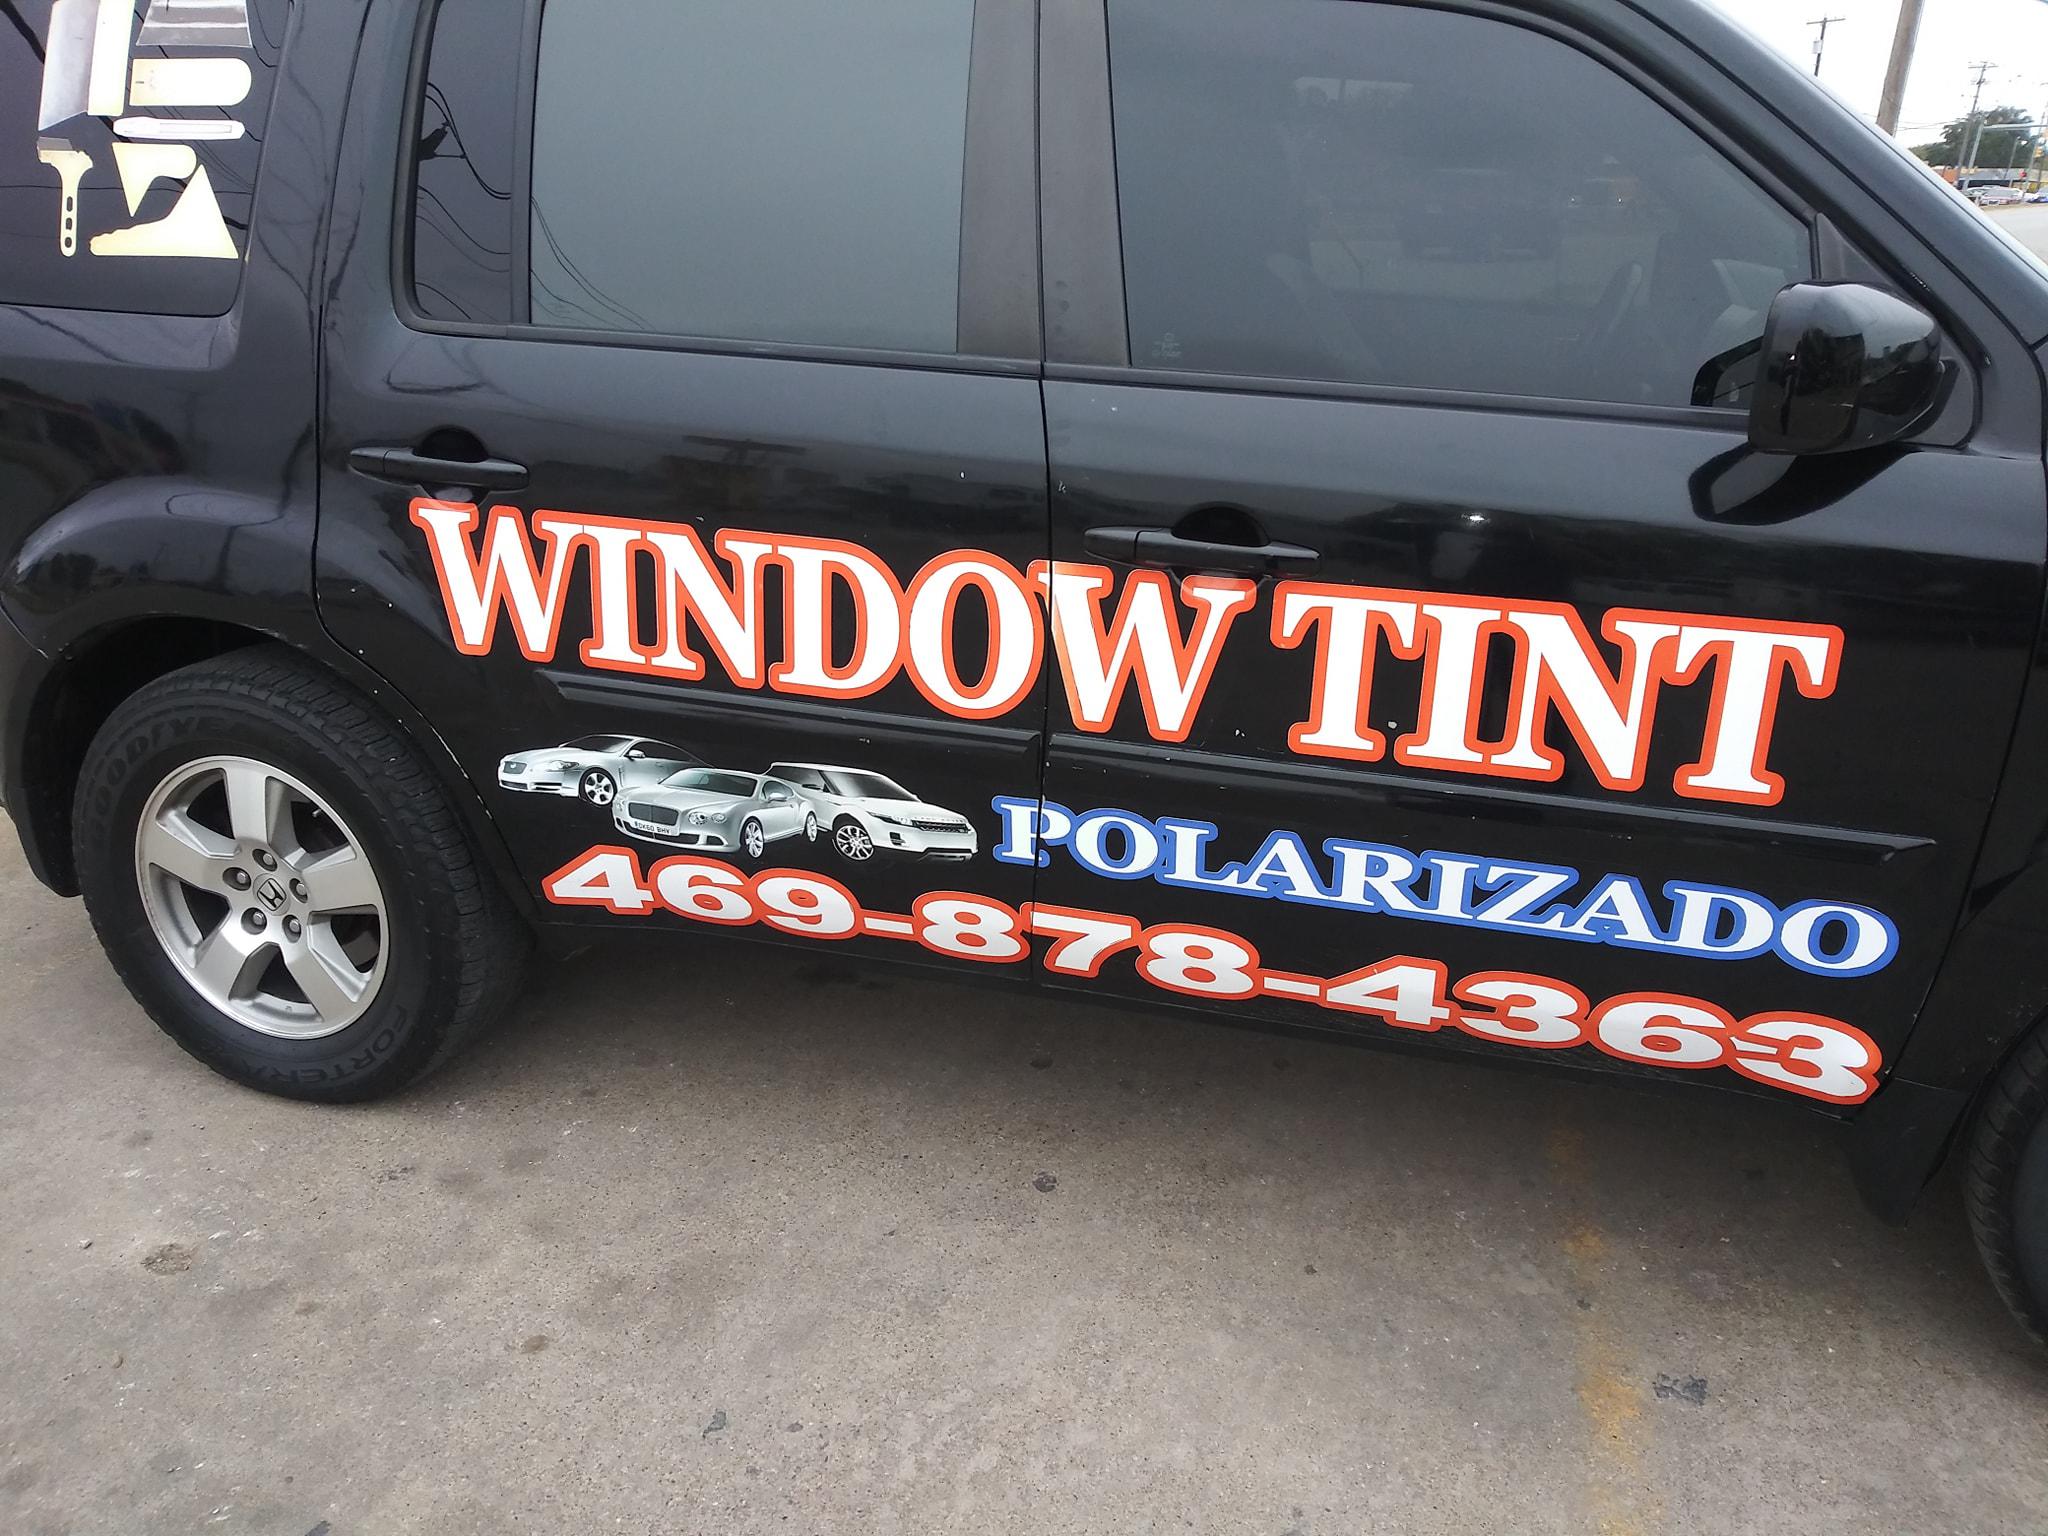 Window Tint Polarizado